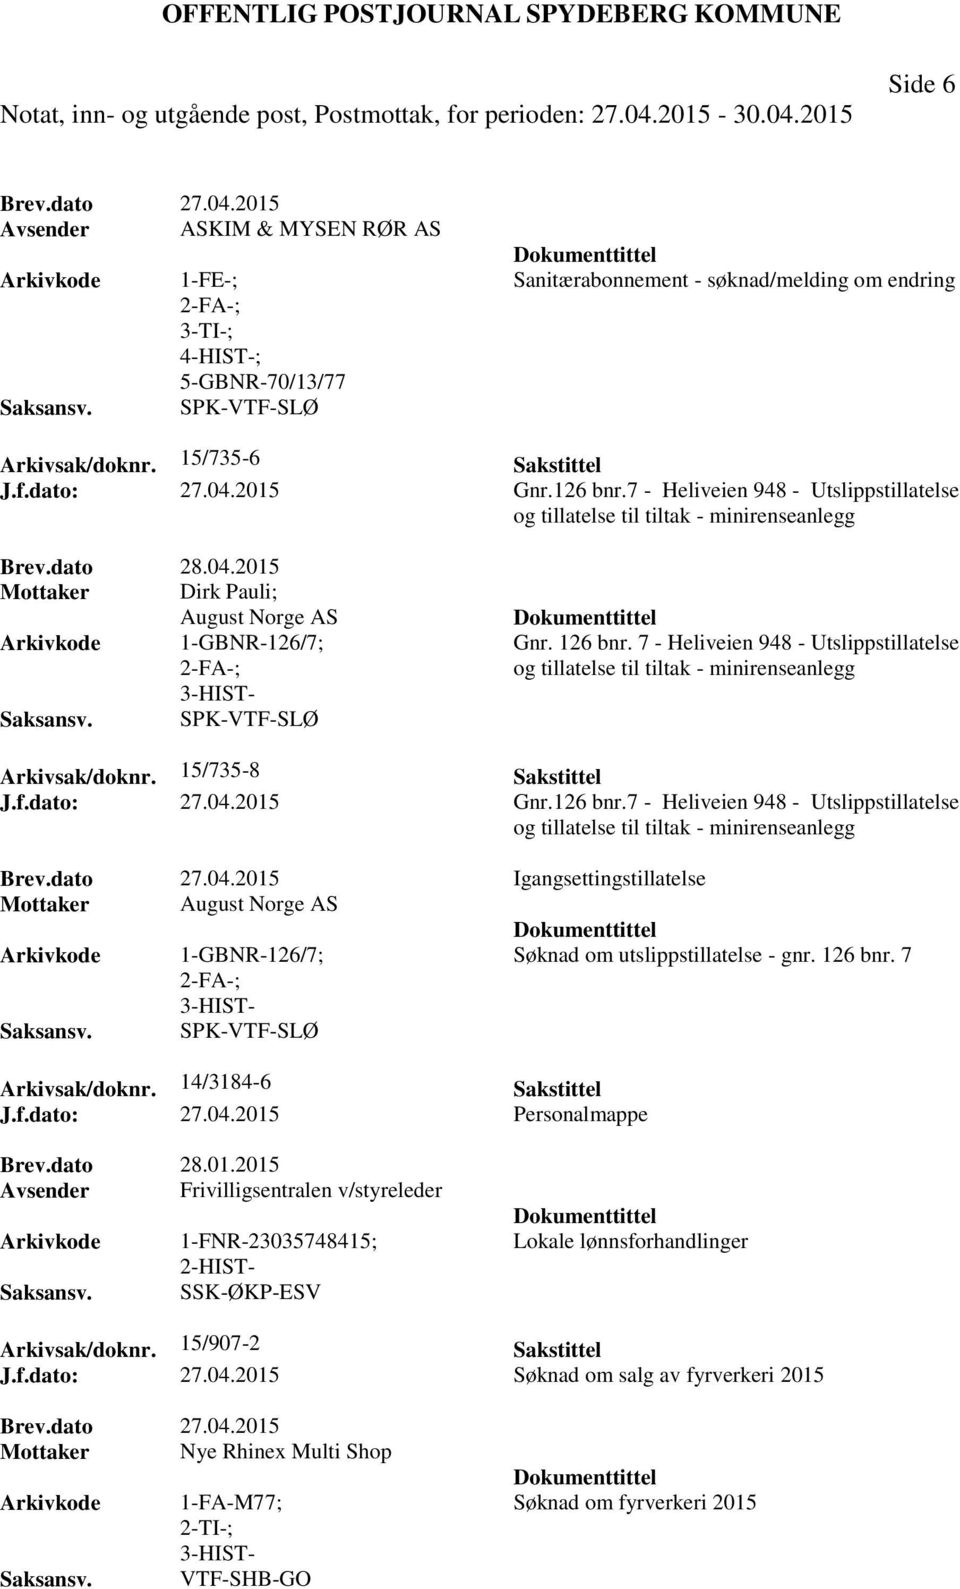 7 - Heliveien 948 - Utslippstillatelse og tillatelse til tiltak - minirenseanlegg Arkivsak/doknr. 15/735-8 Sakstittel J.f.dato: 27.04.2015 Gnr.126 bnr.